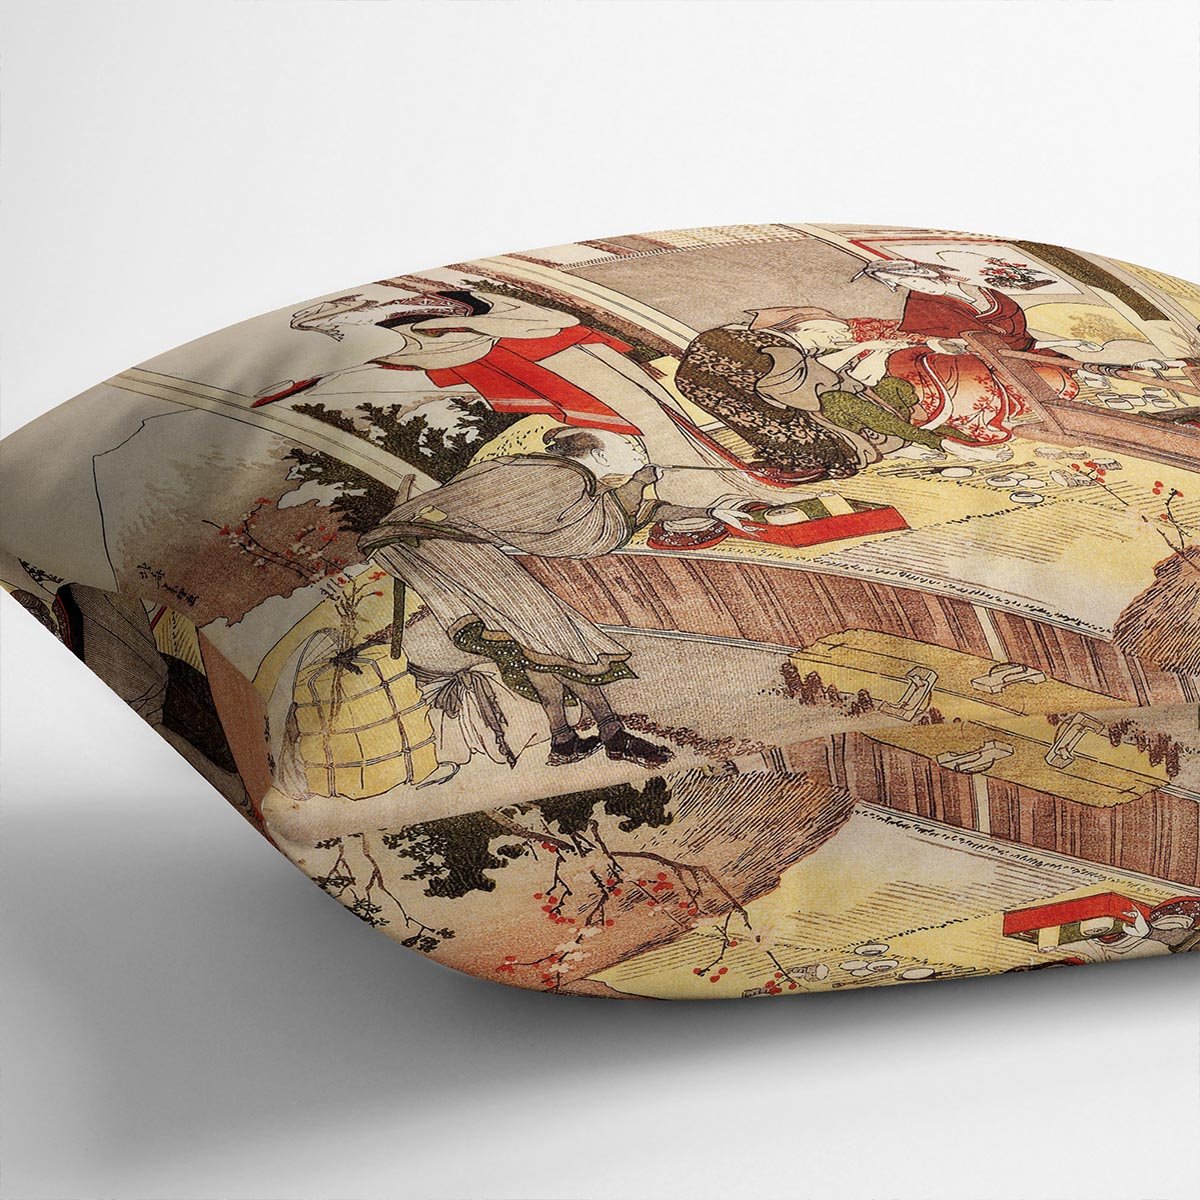 The studio of Netsuke by Hokusai Throw Pillow